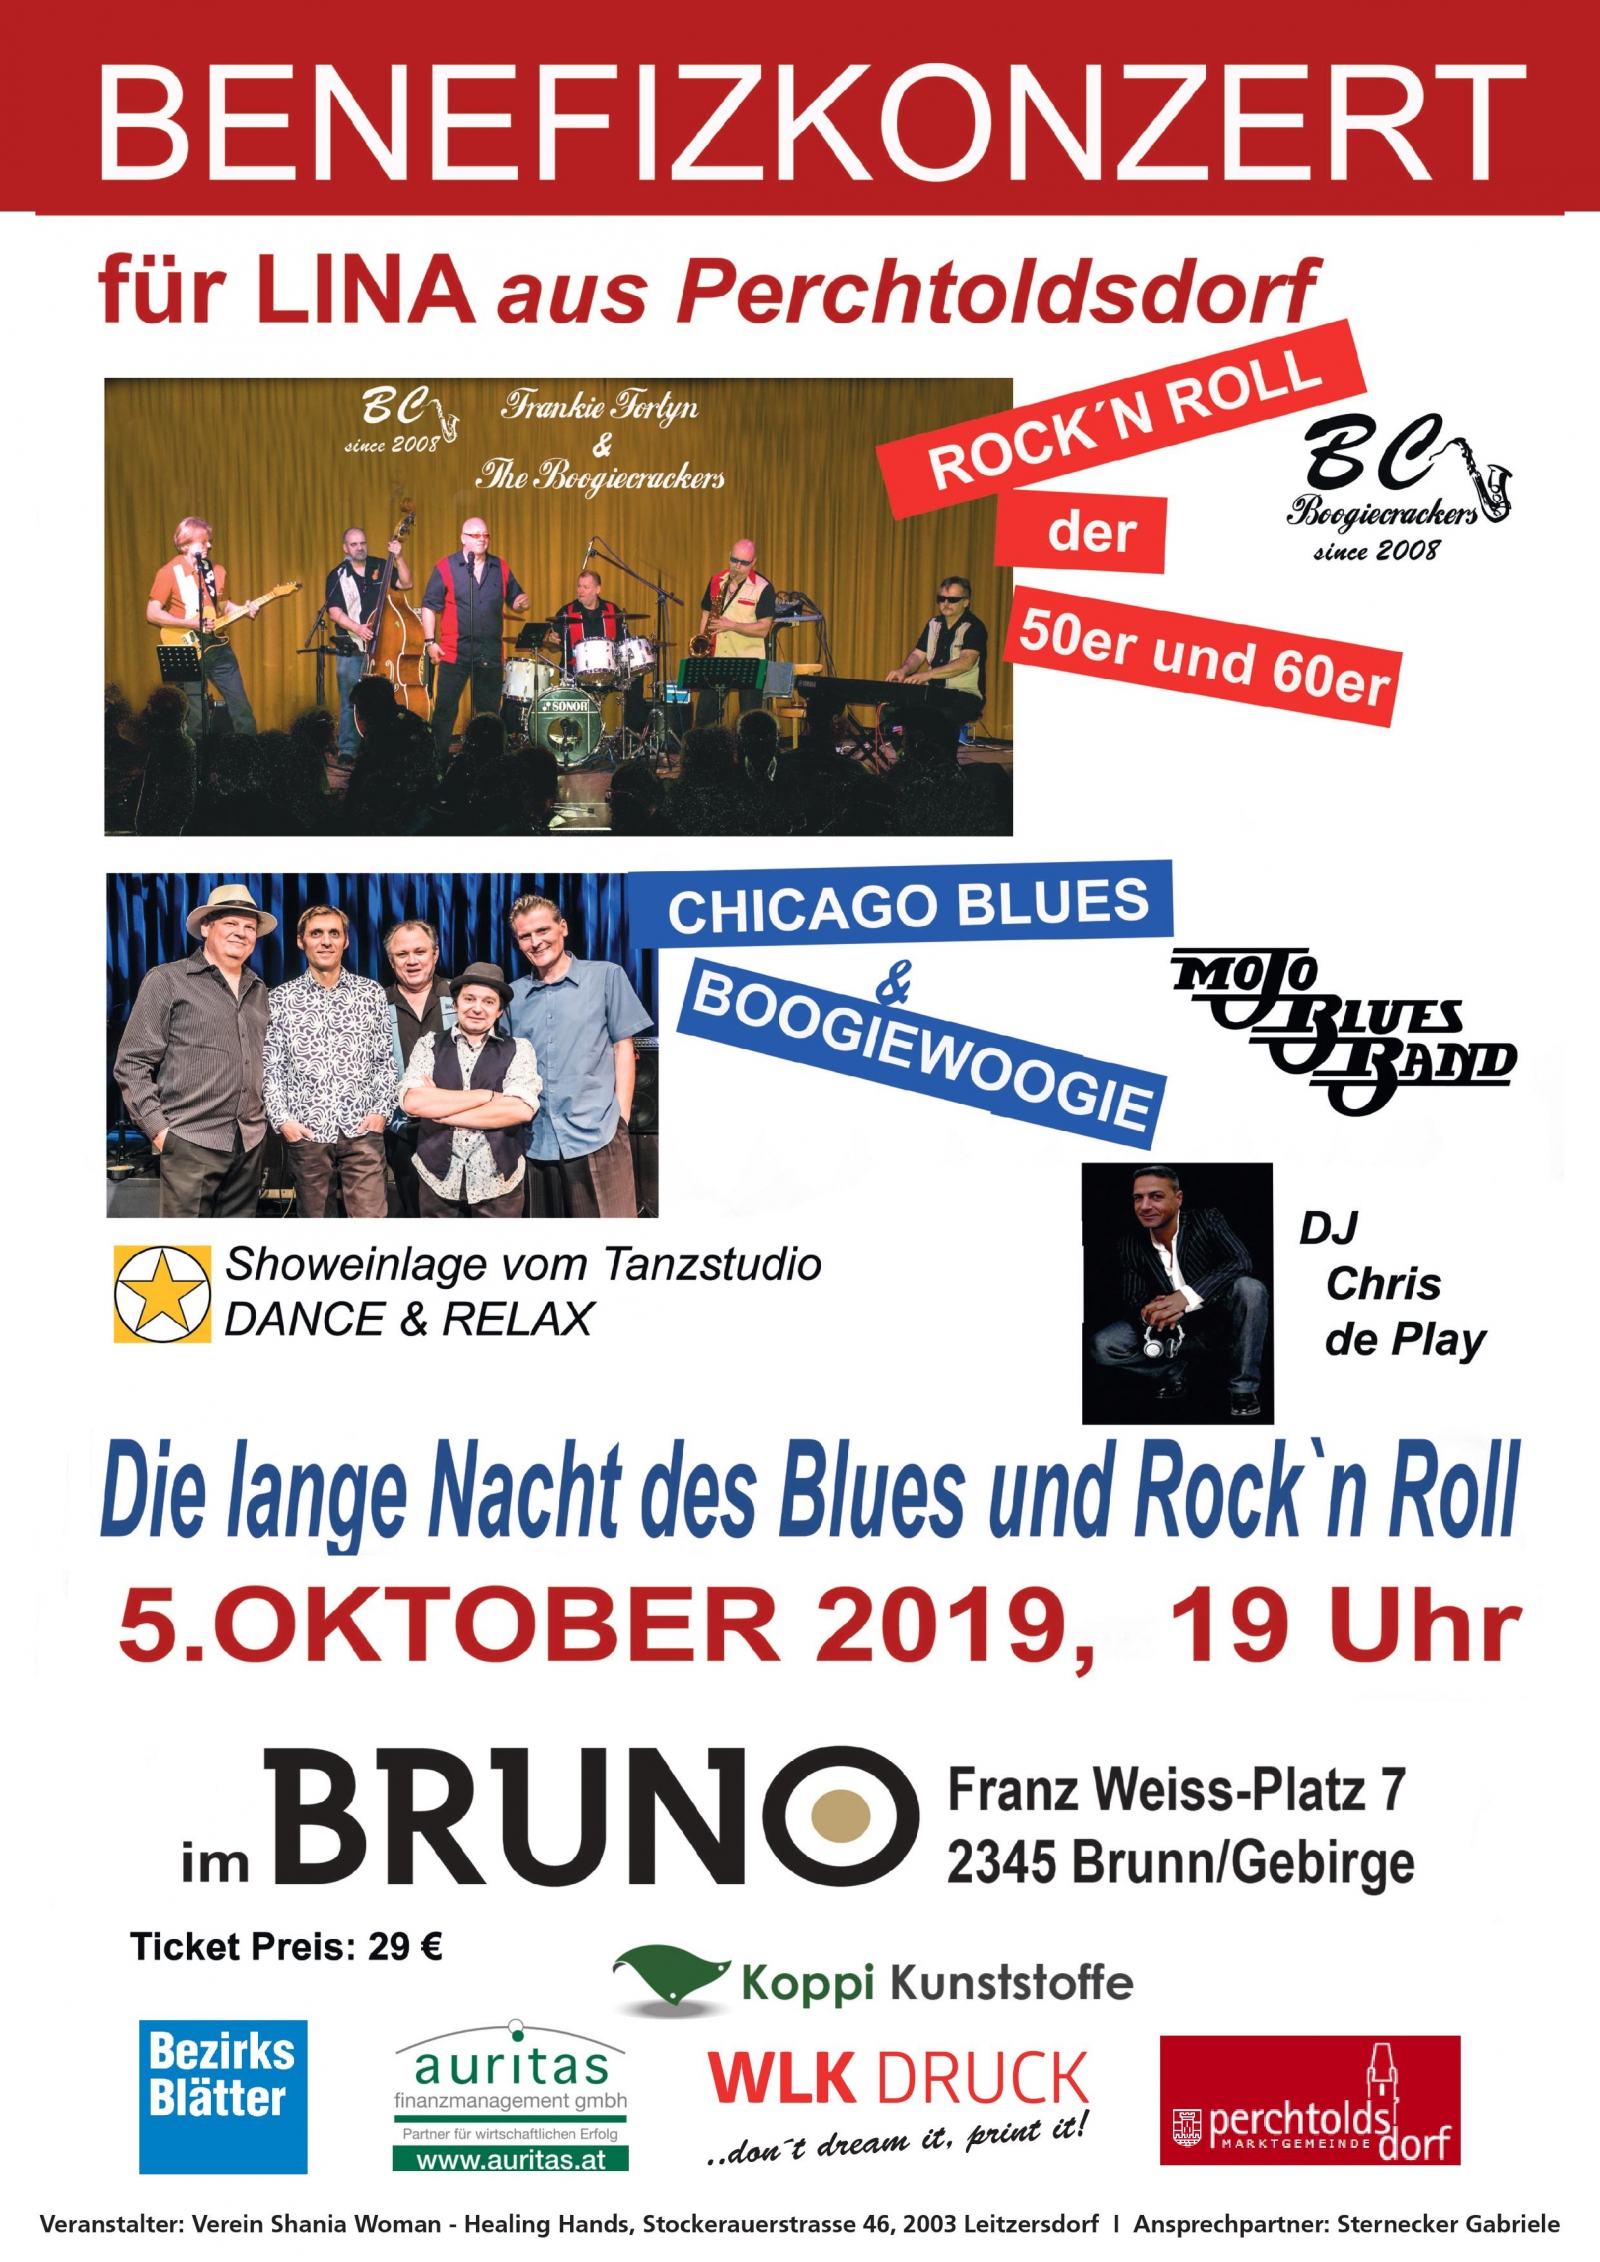 Die Lange Nacht des Blues und Rock\'n Roll - Benefizkonzert für Lina aus Perchtoldsdorf